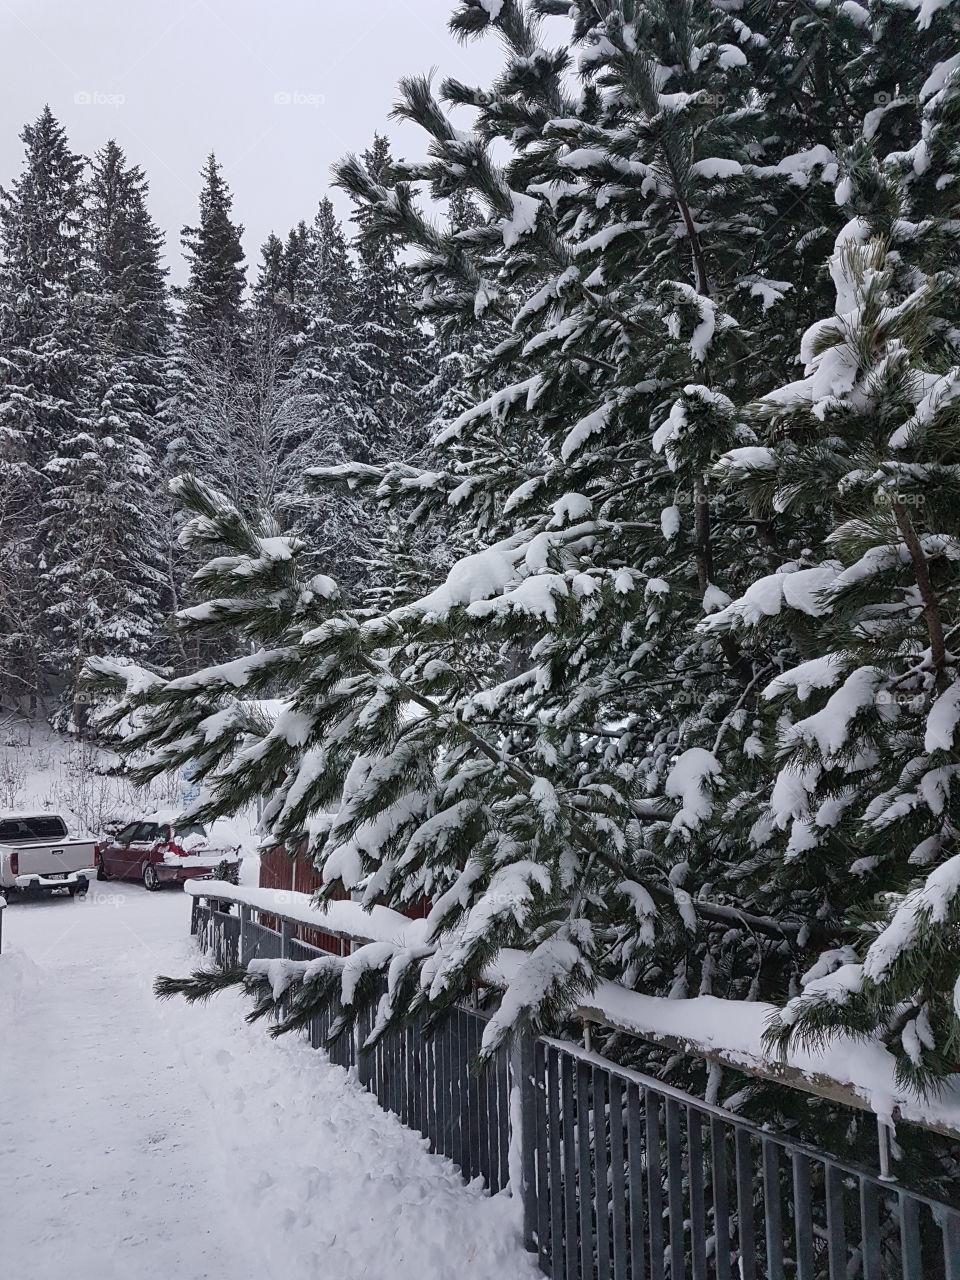 Snow-capped fir